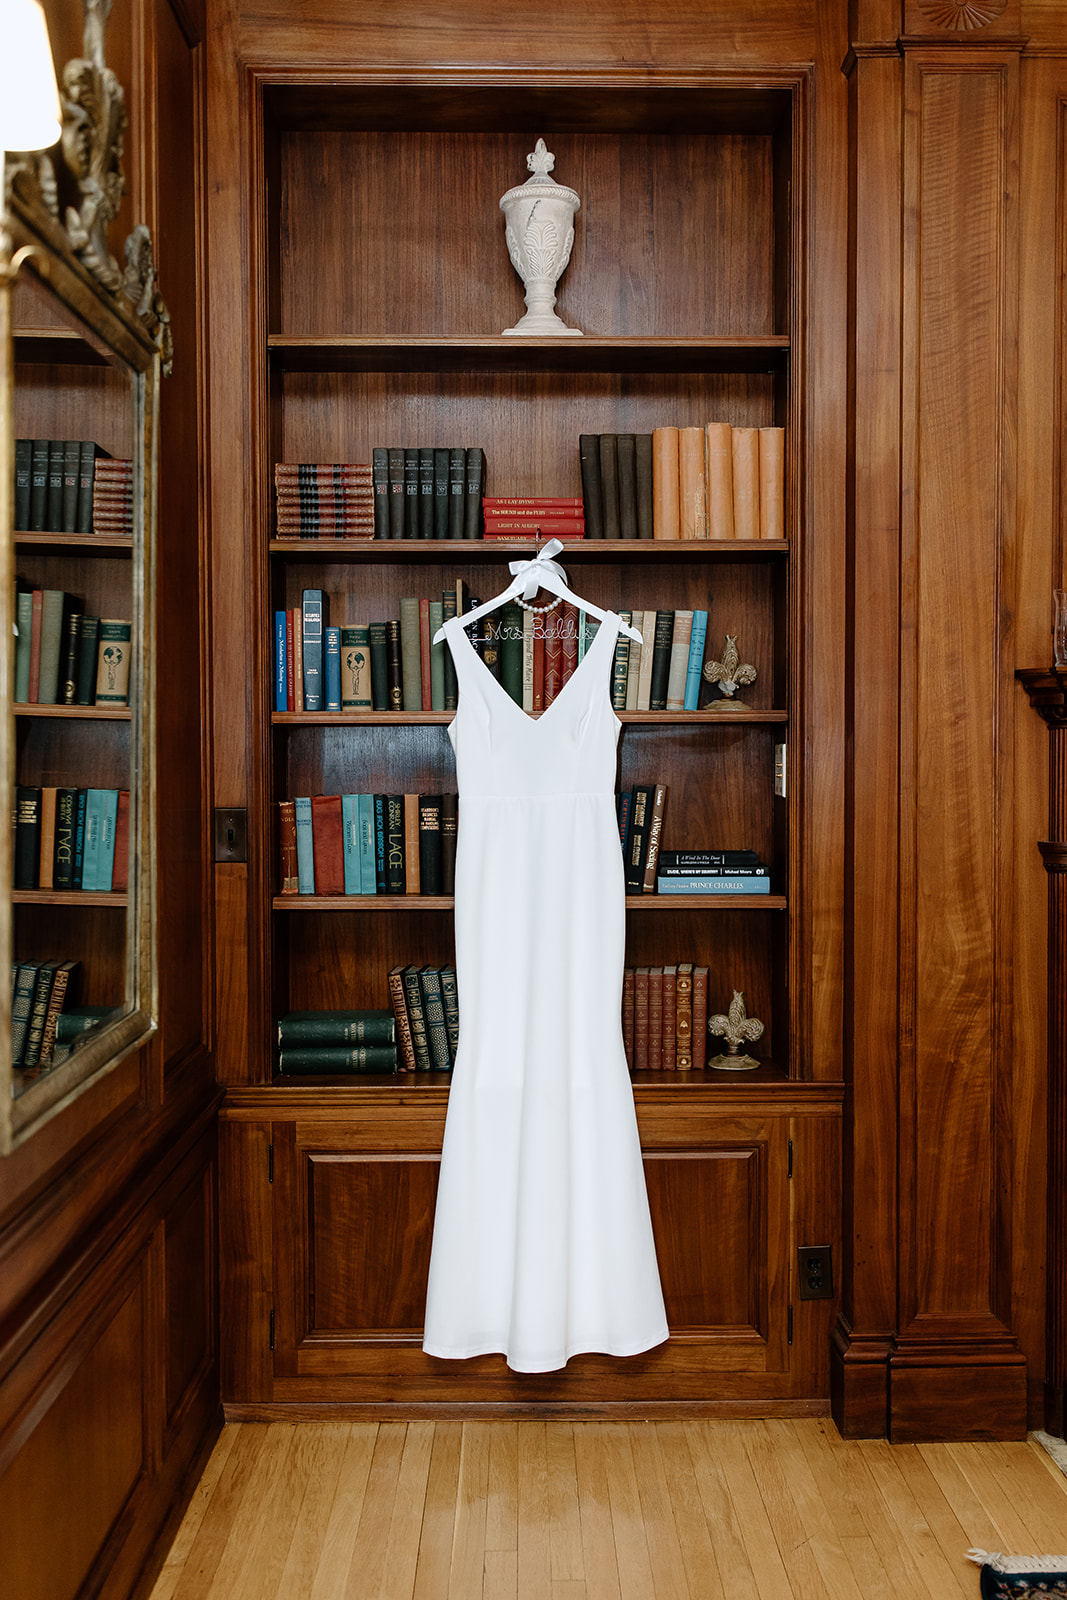 Wedding dress hanging from a bookshelf